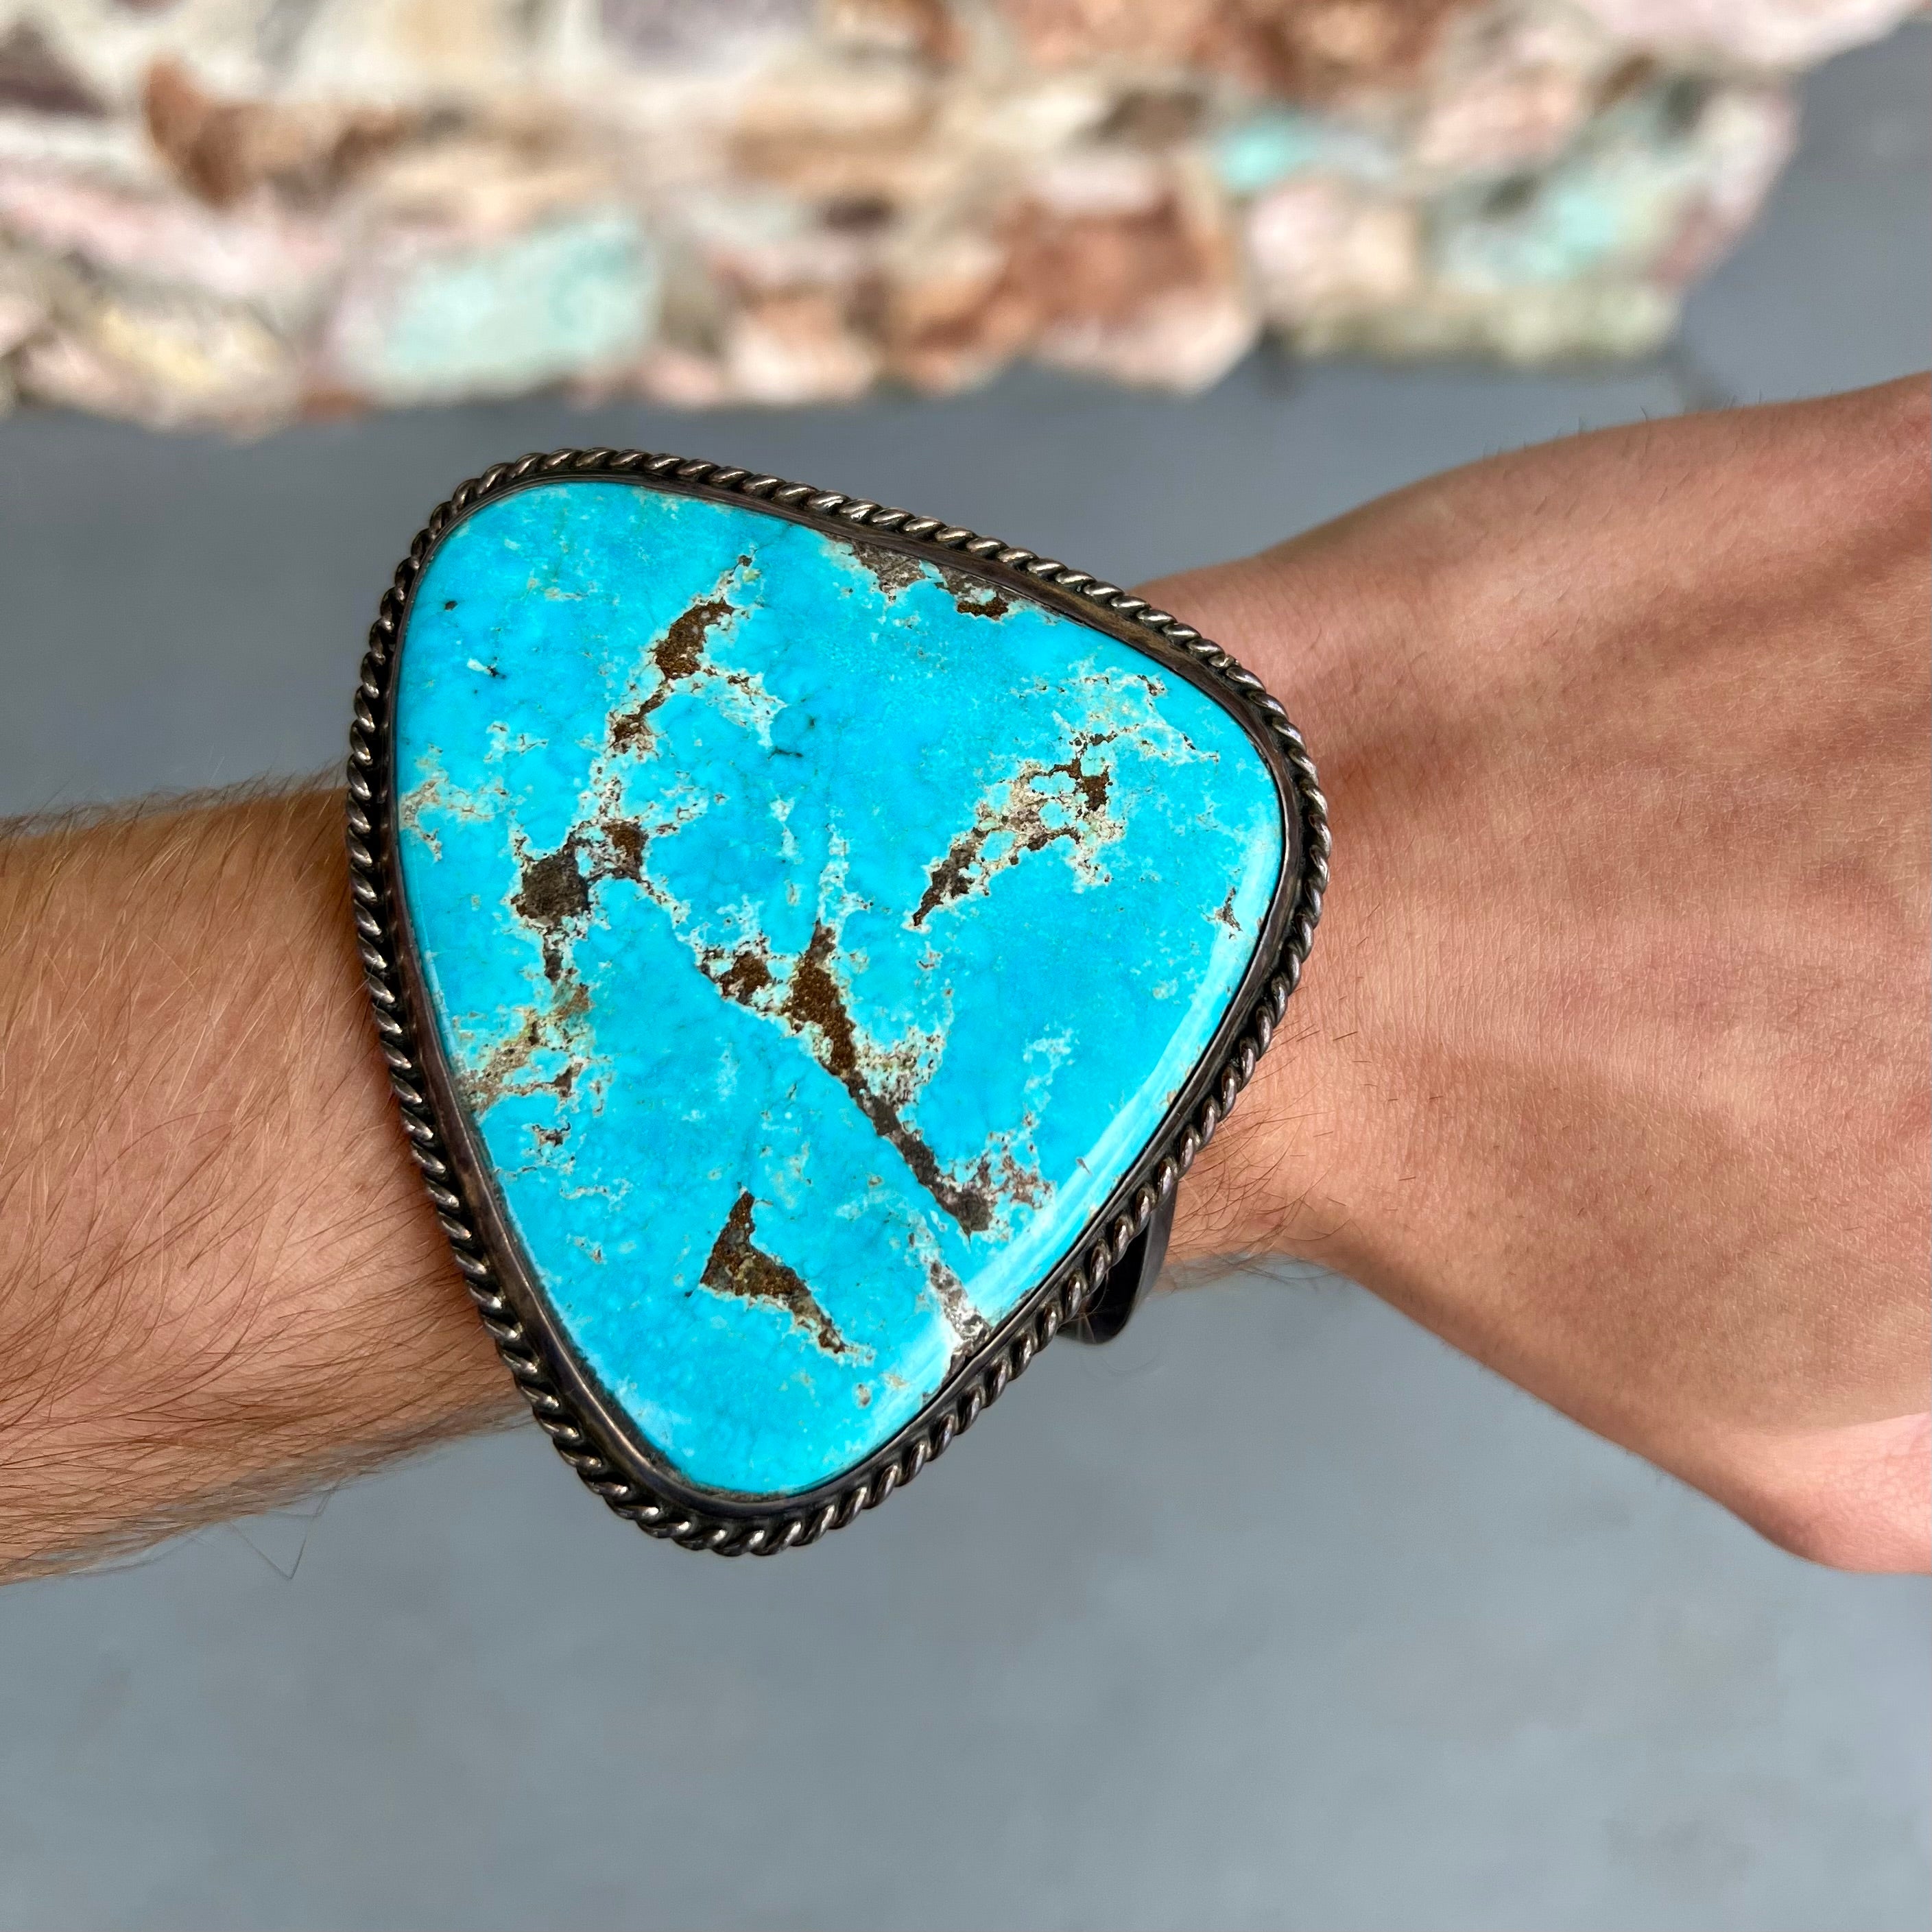 Make Men's Leather Bracelet with Turquoise Slab - Beads & Basics